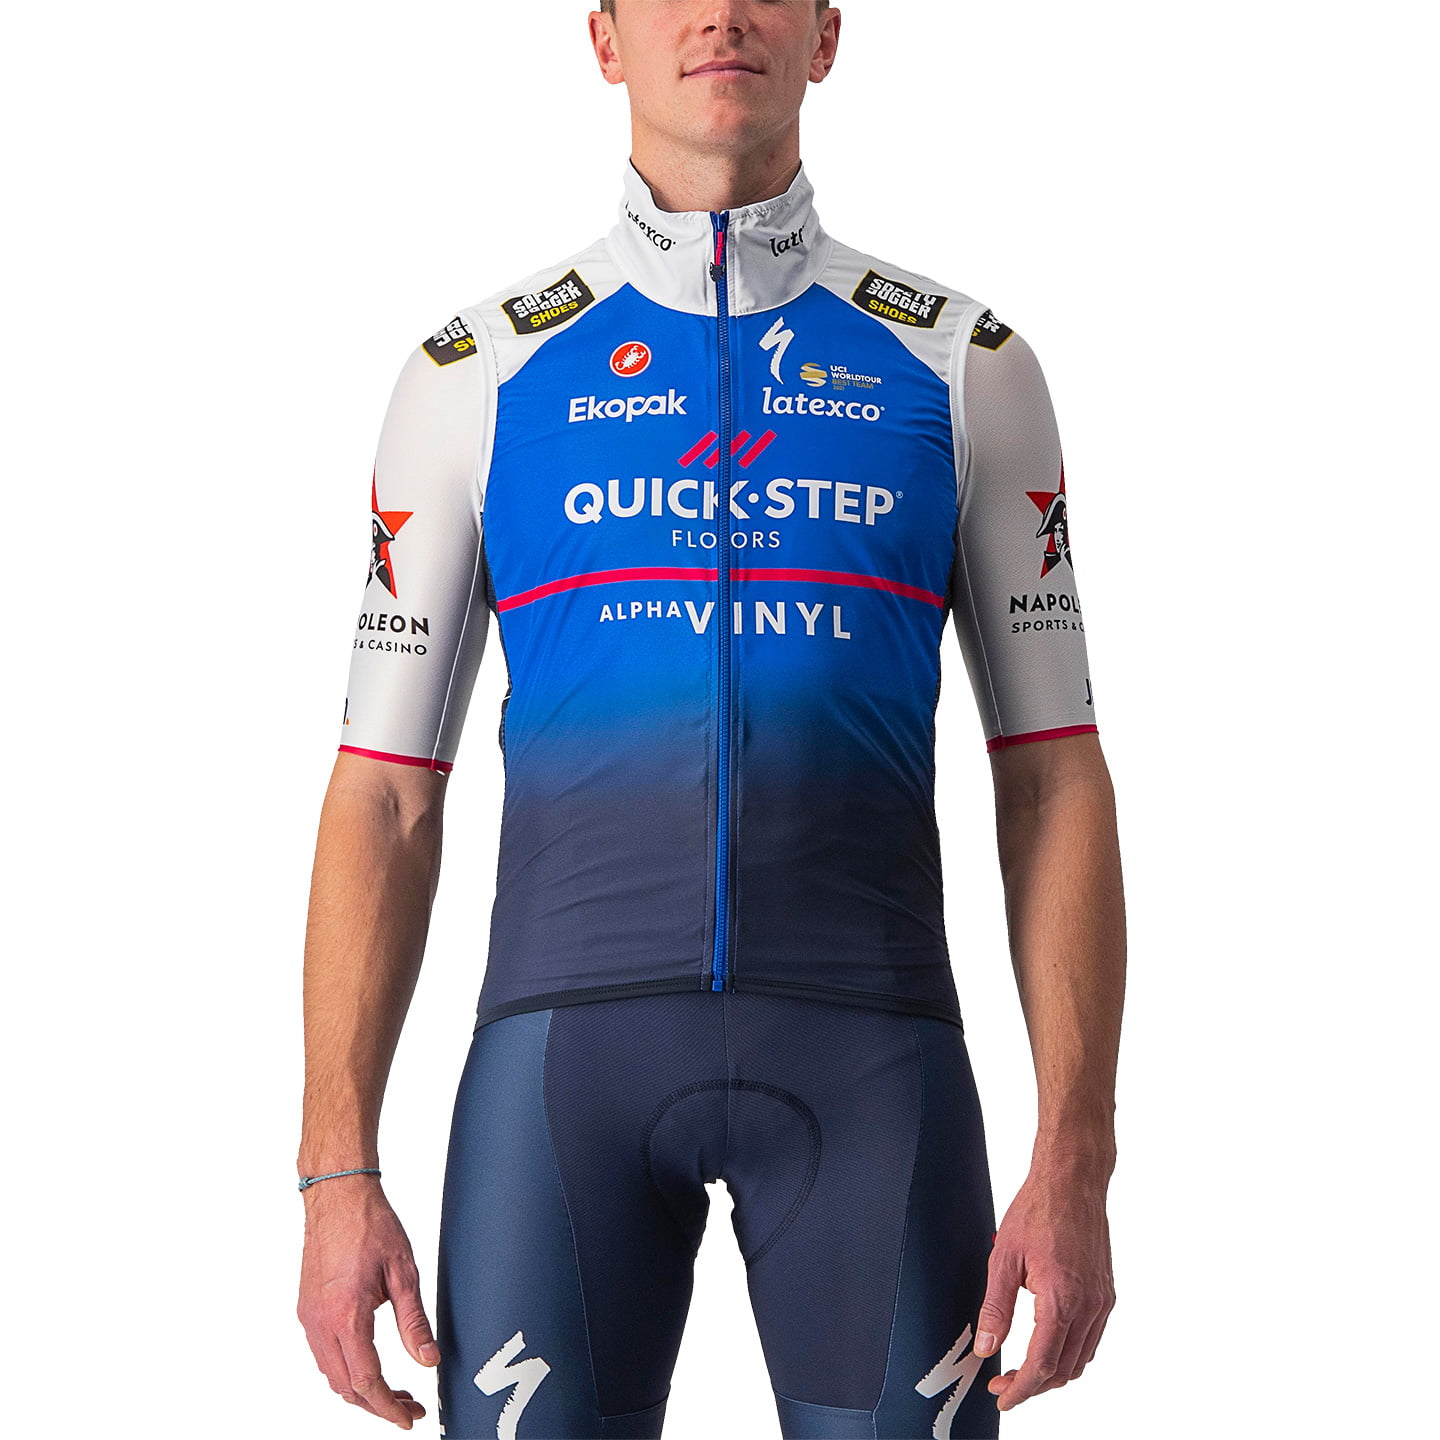 QUICK-STEP ALPHA VINYL 2022 Wind Vest, for men, size XL, Cycling vest, Bike gear